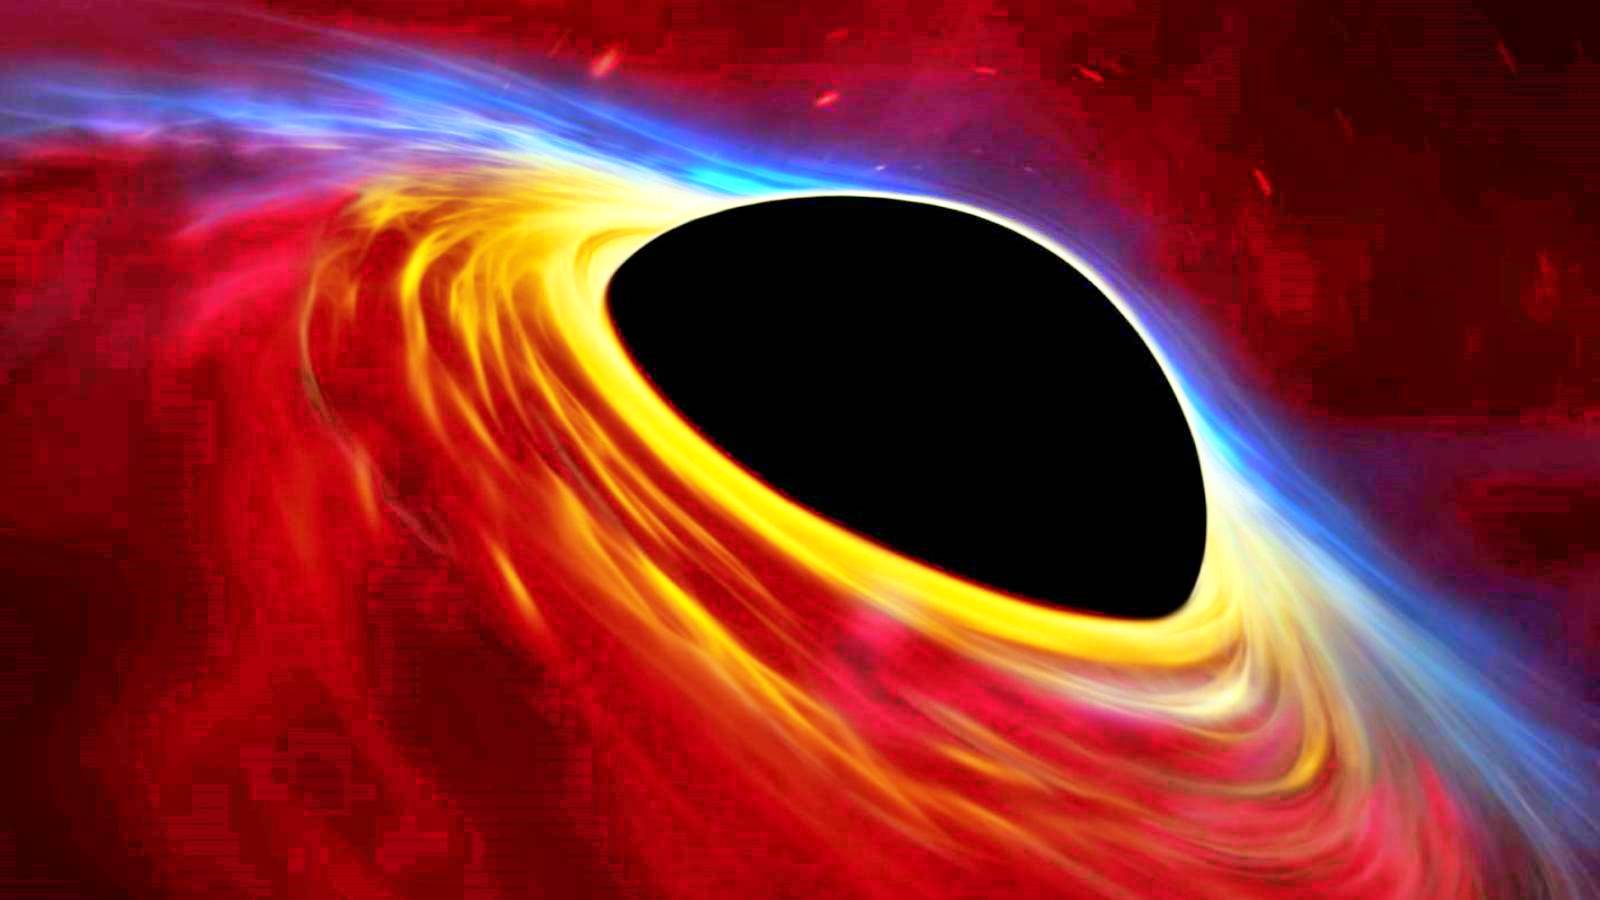 INCREDIBILE Il buco nero ha impressionato le persone La scienza rivela il segreto dell'Universo